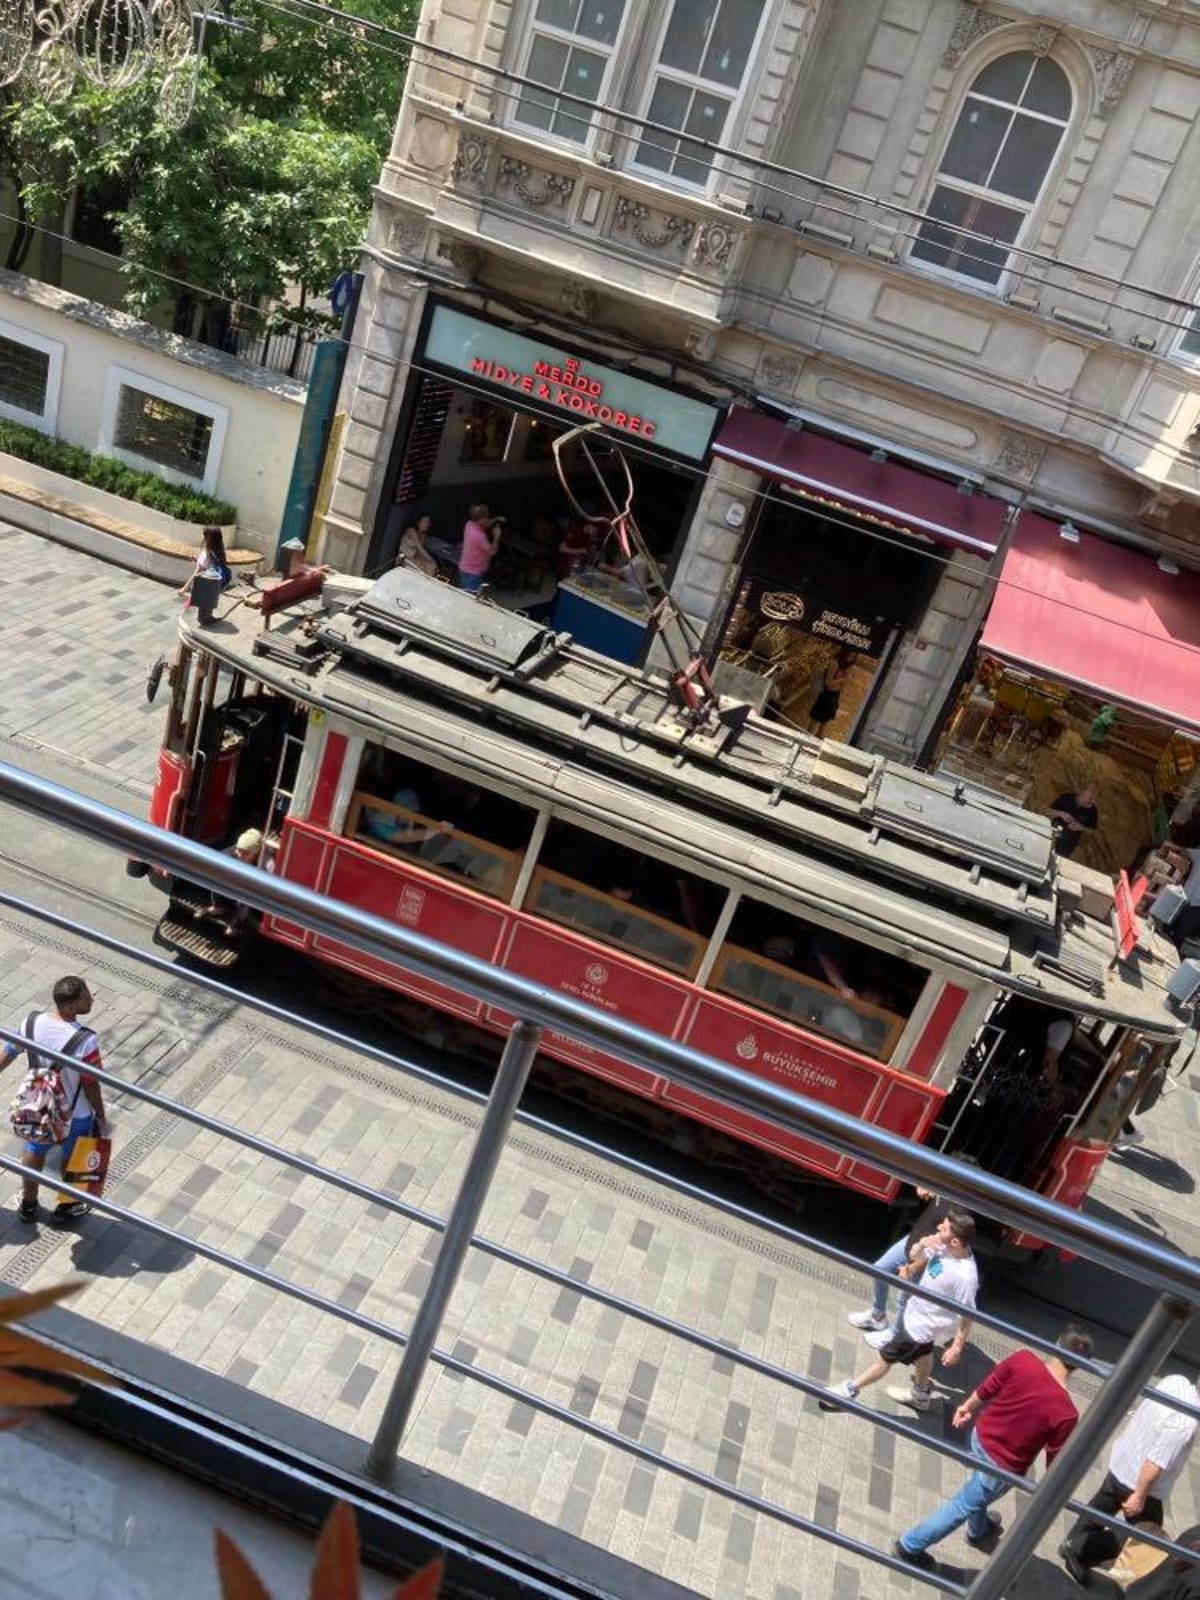 Lákadlem Istanbulu je i projížďka historickou tramvají po nákupní ulici stiklal Caddesi.